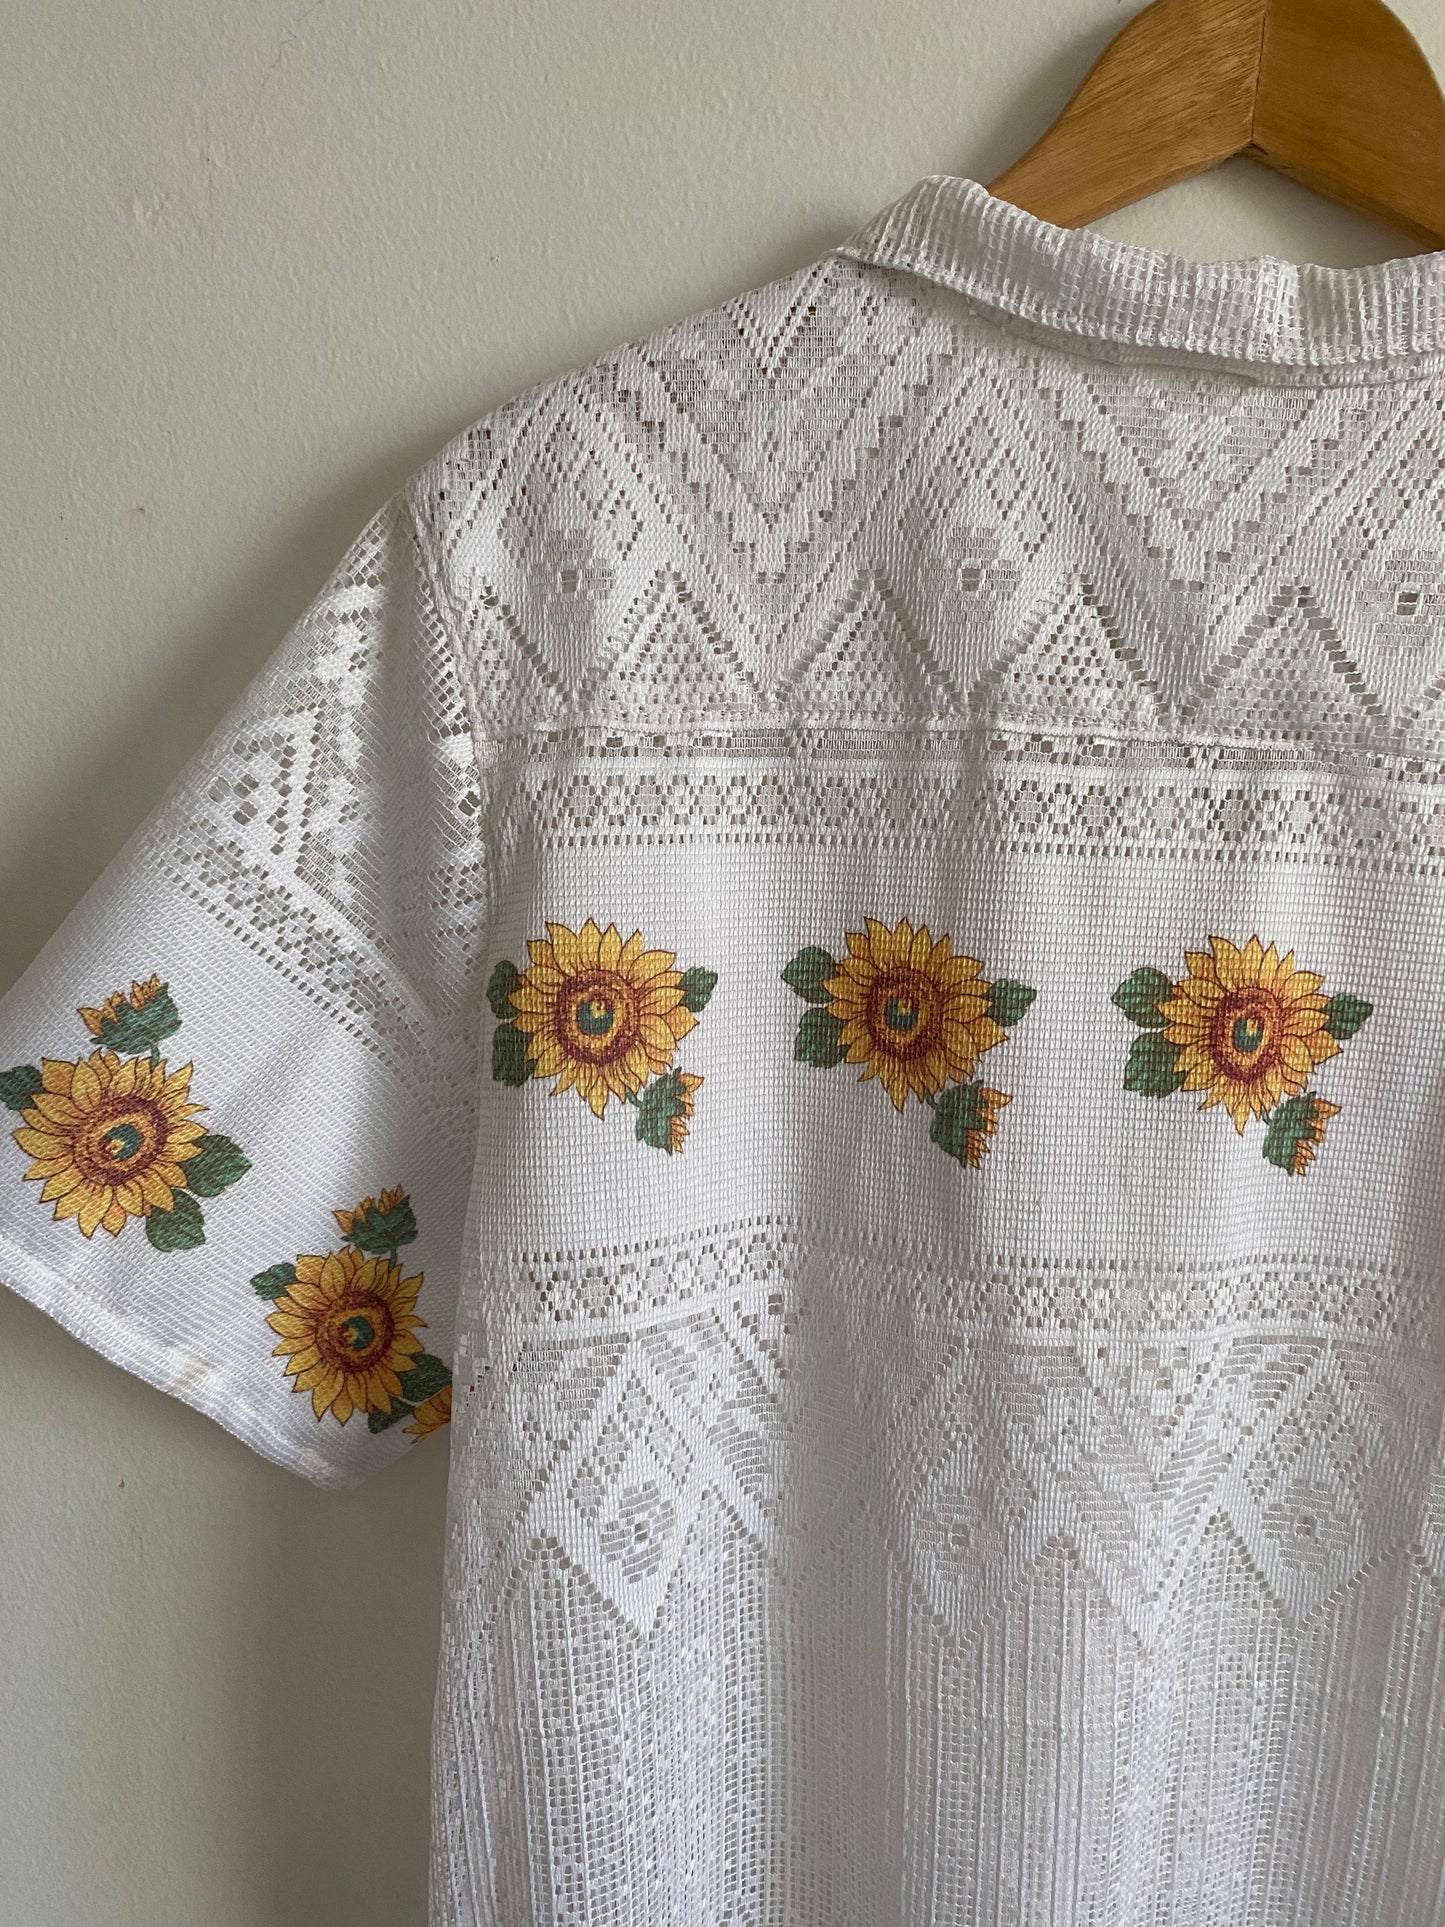 The Sunflower Shirt